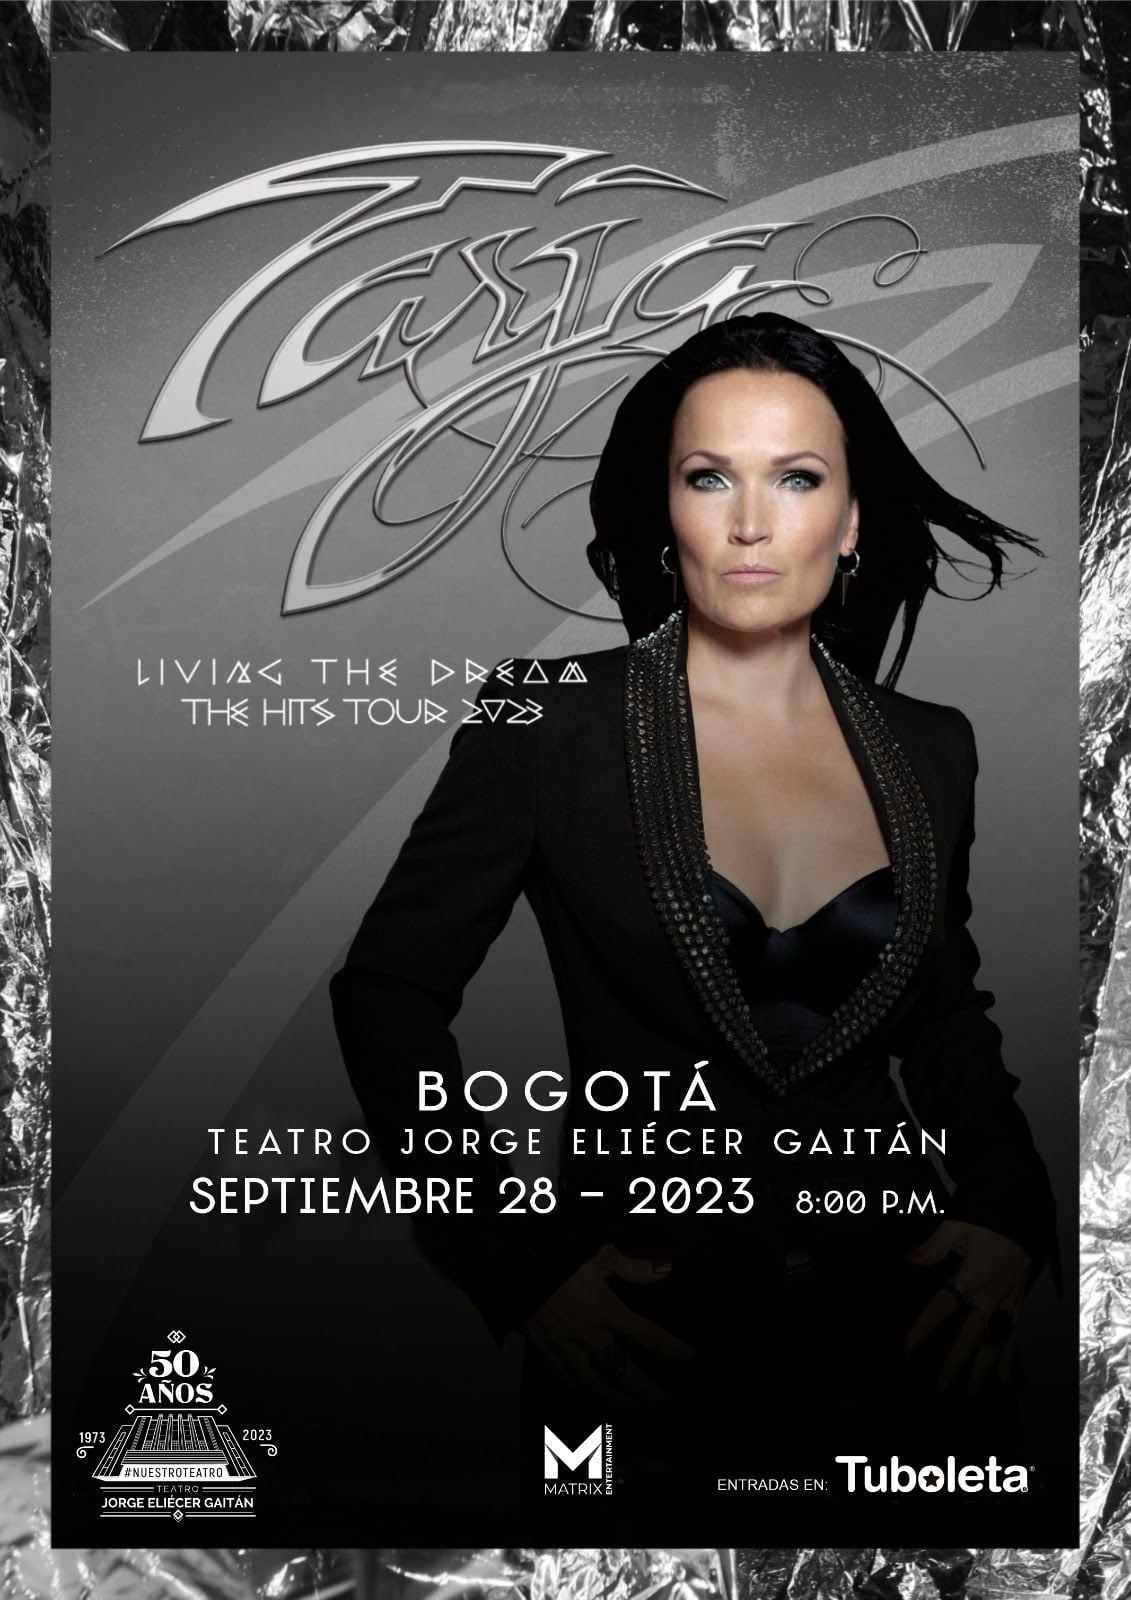 “Living The Dream”, Tarja Turunen en Bogotá.

The Hits Tour 2023